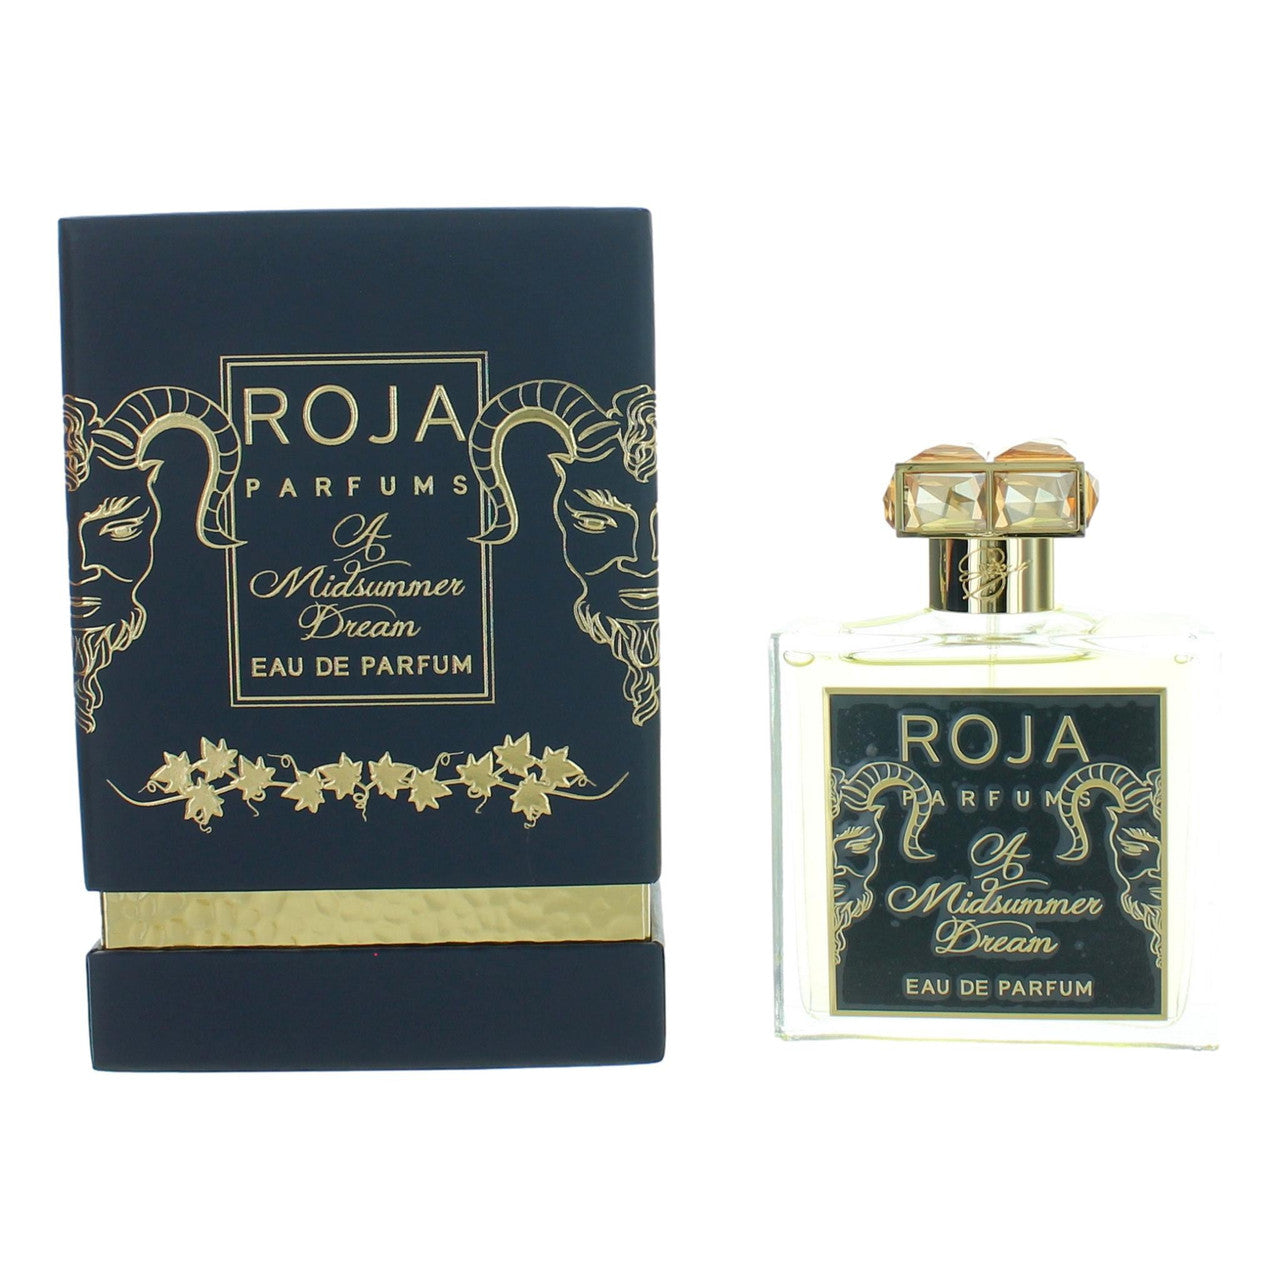 3.4 oz bottle of A Midsummer Dream by Roja Parfums